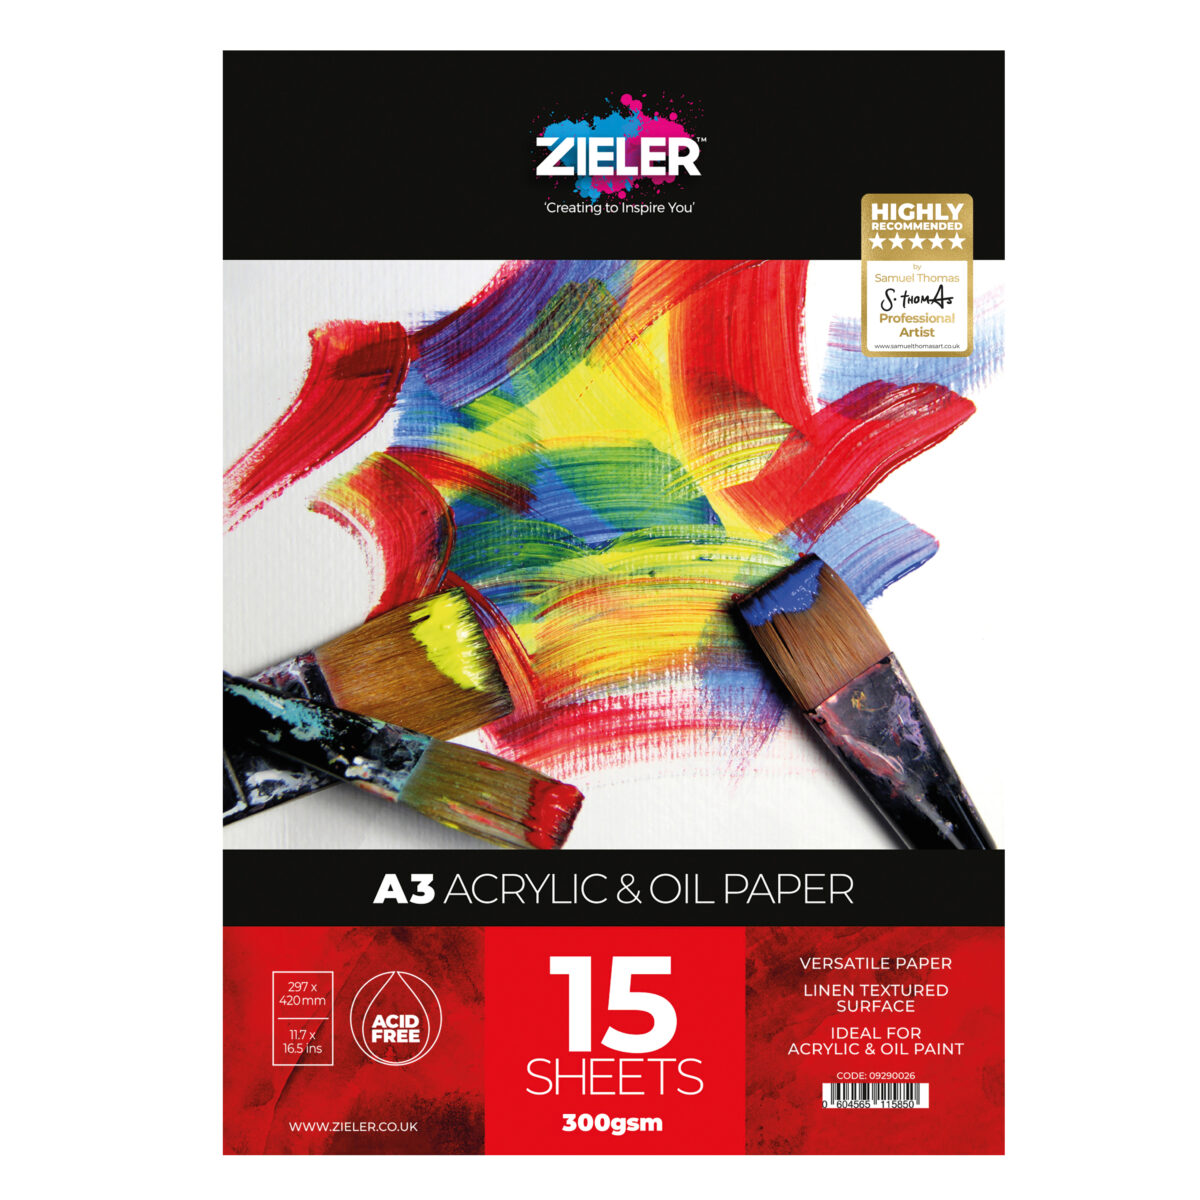 A3 Acrylic 1 - Zieler Art Supplies